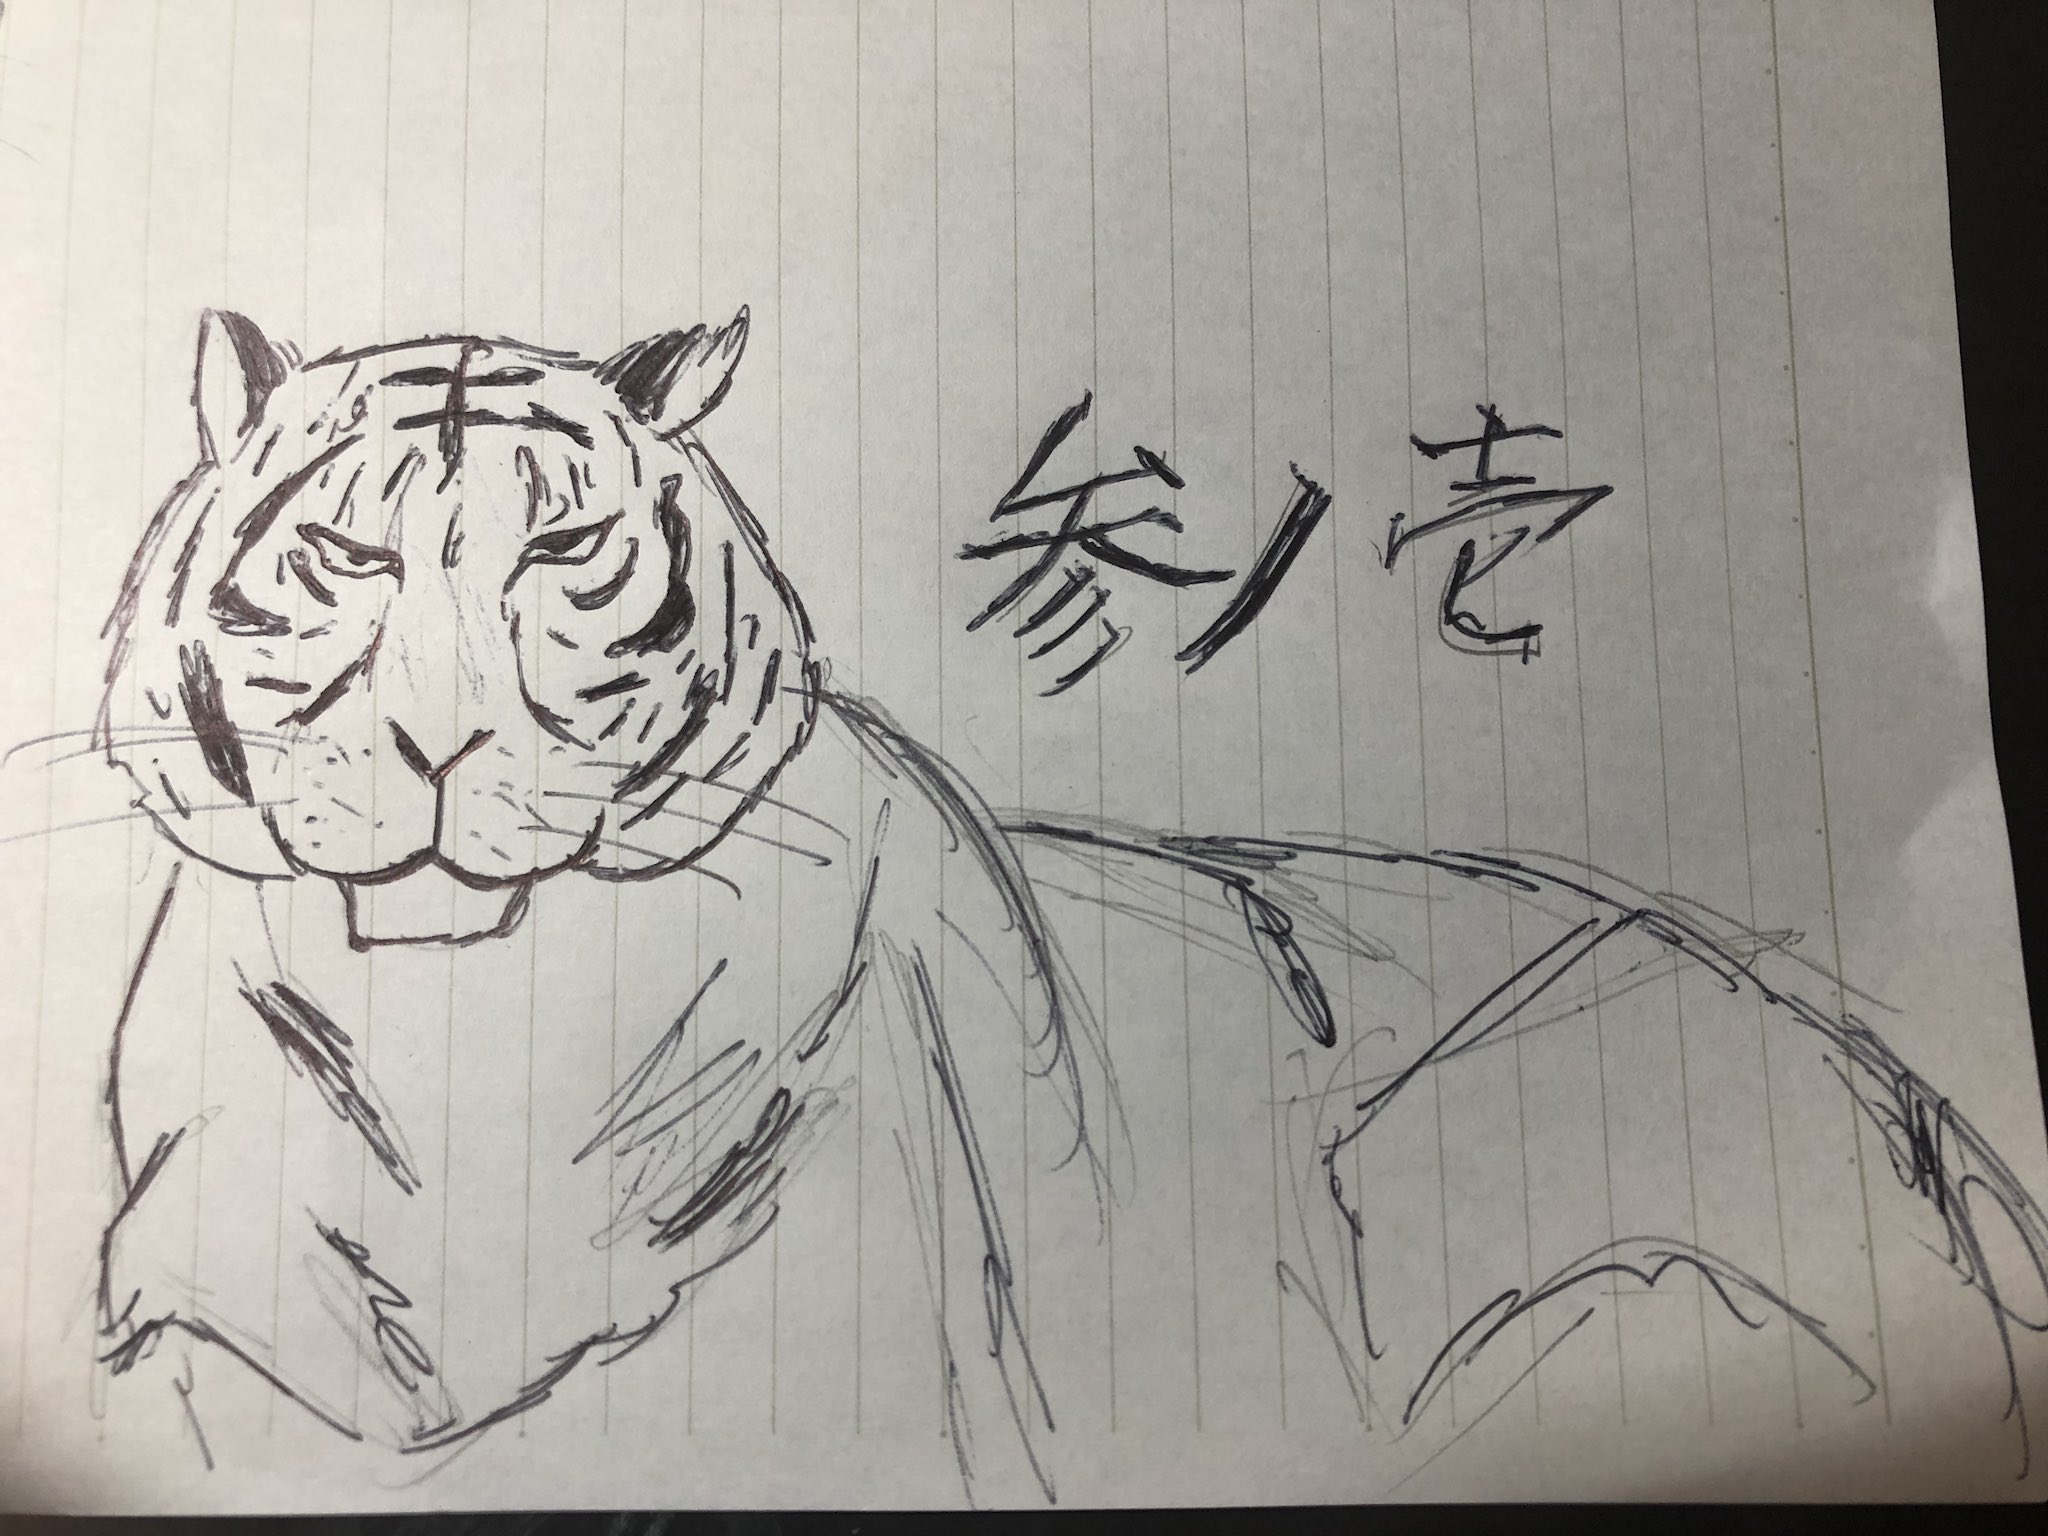 えーちゃん 学級旗に描く虎です 何かが違う気がするんですが 何かアドバイスお願いします T Co Y7swsgbg51 Twitter